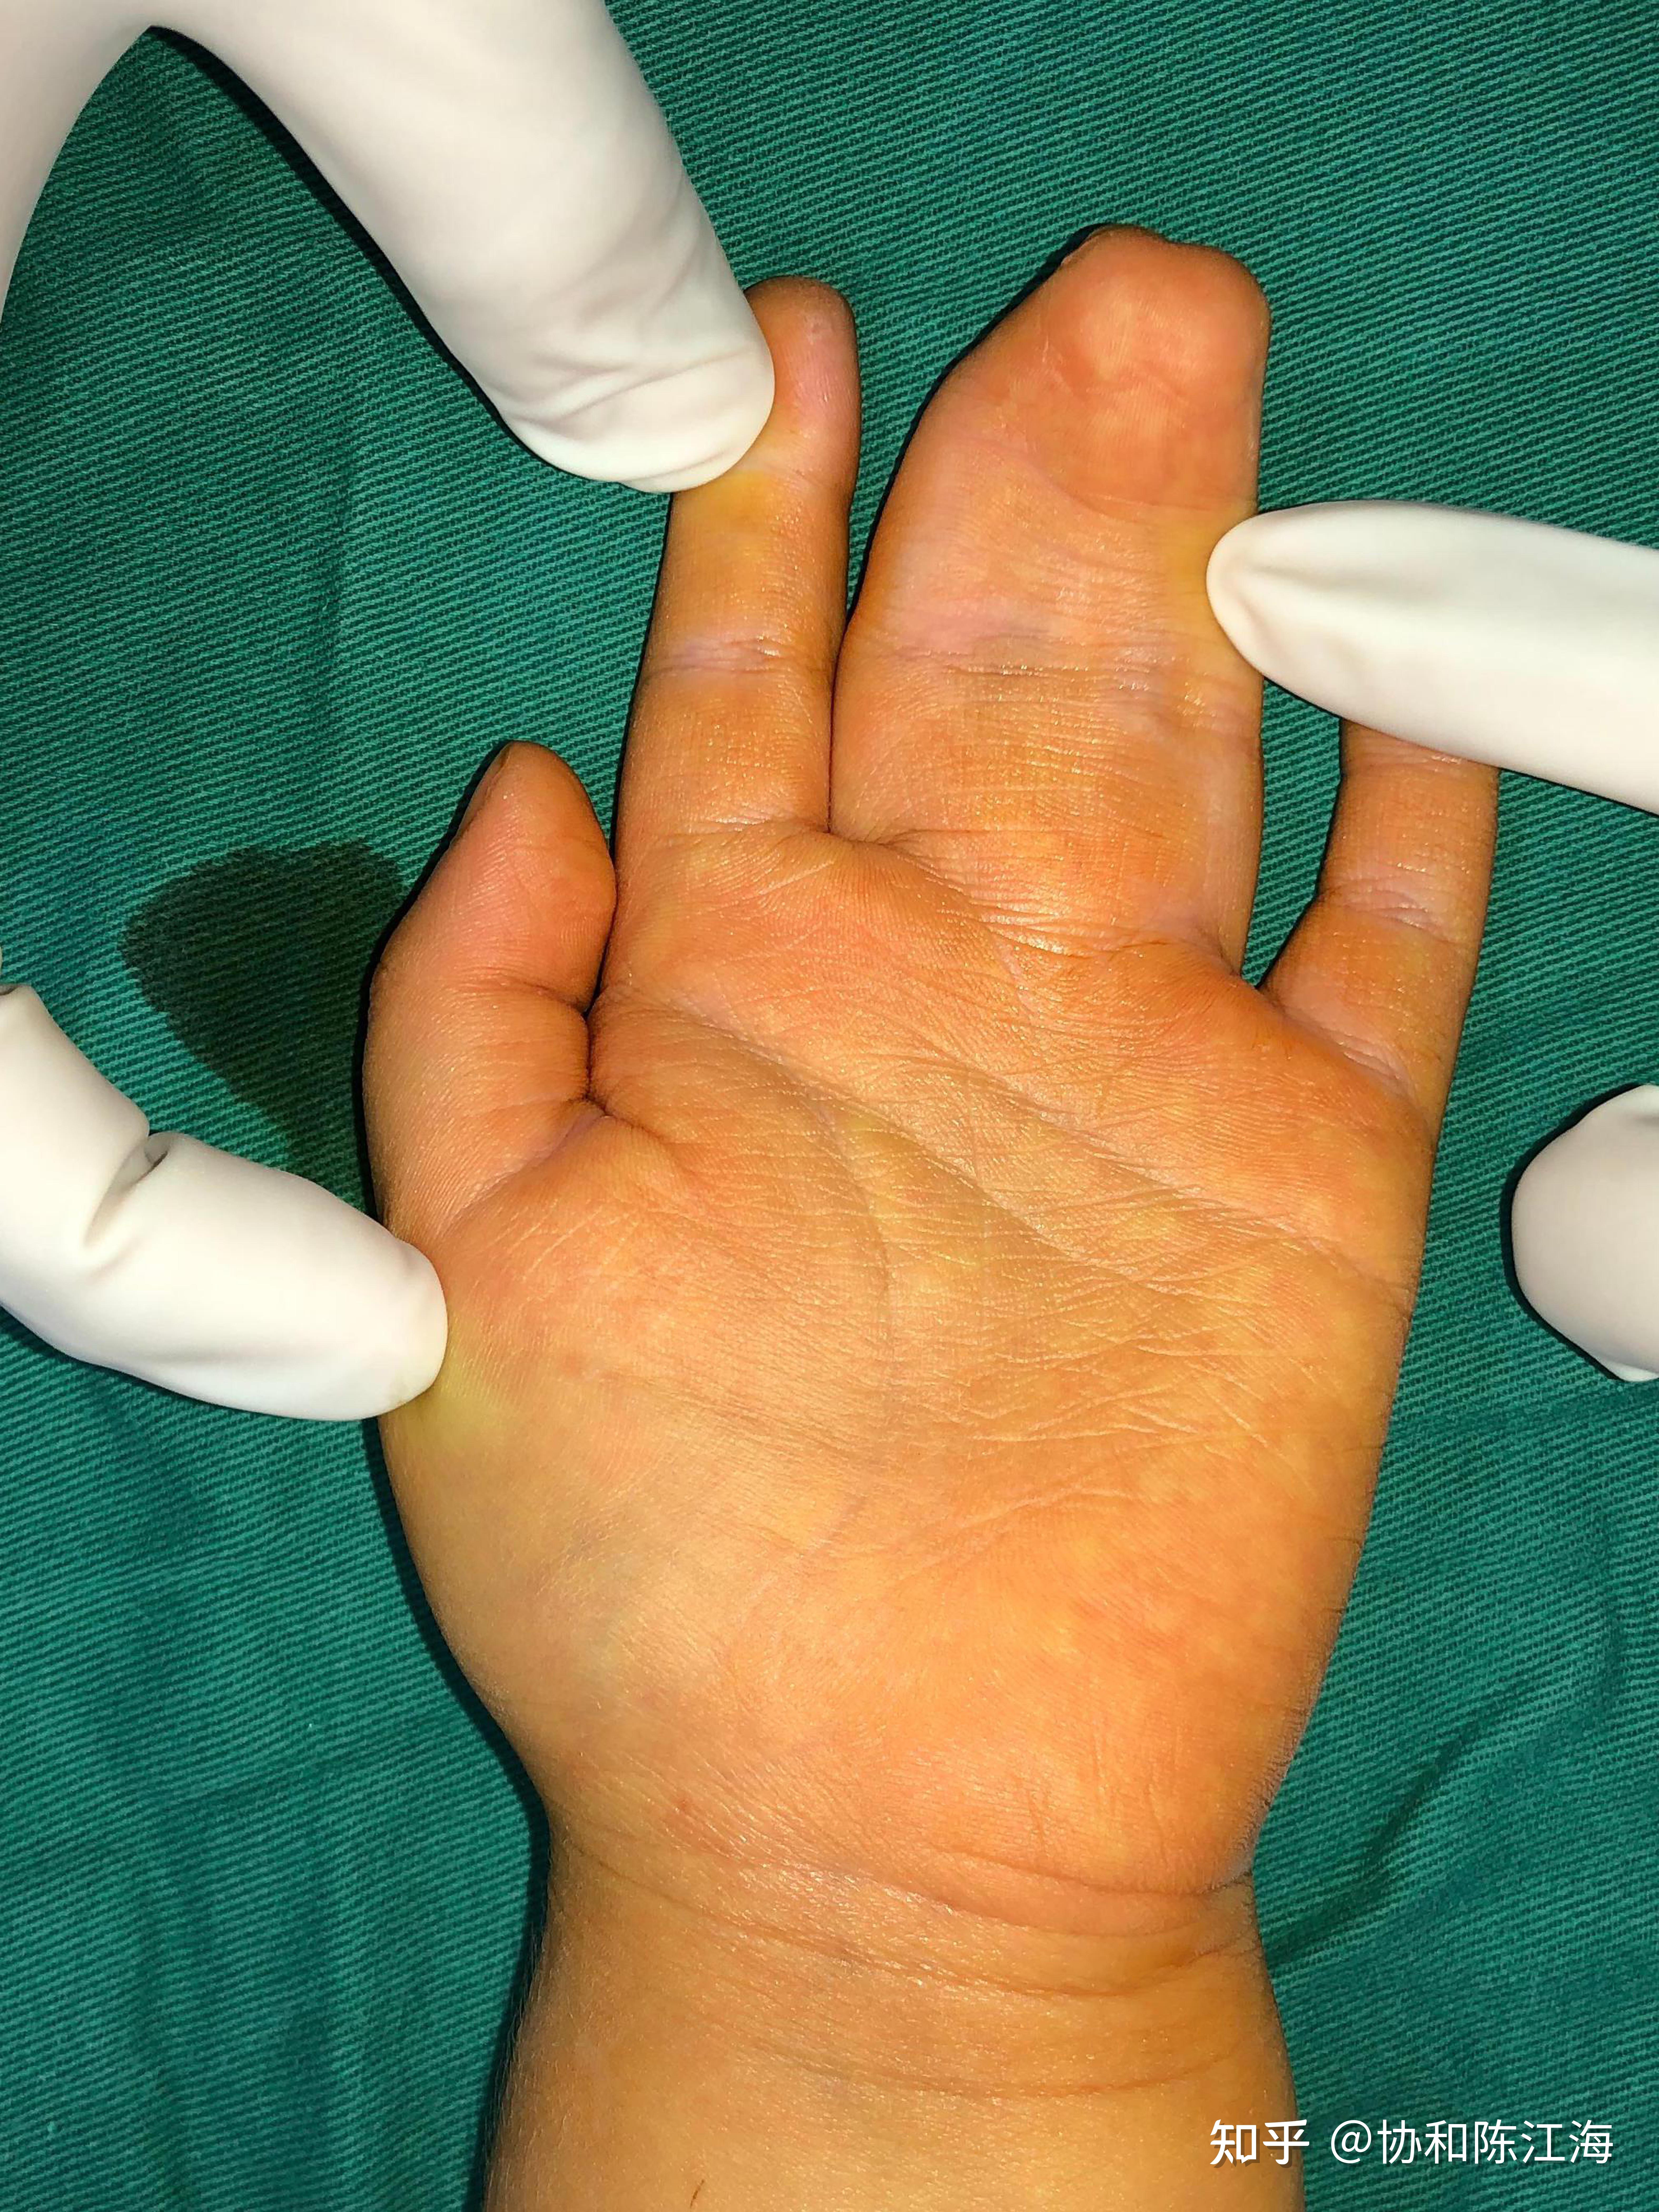 现在的医学技术可以将严重并指手指畸形手术成常人吗?